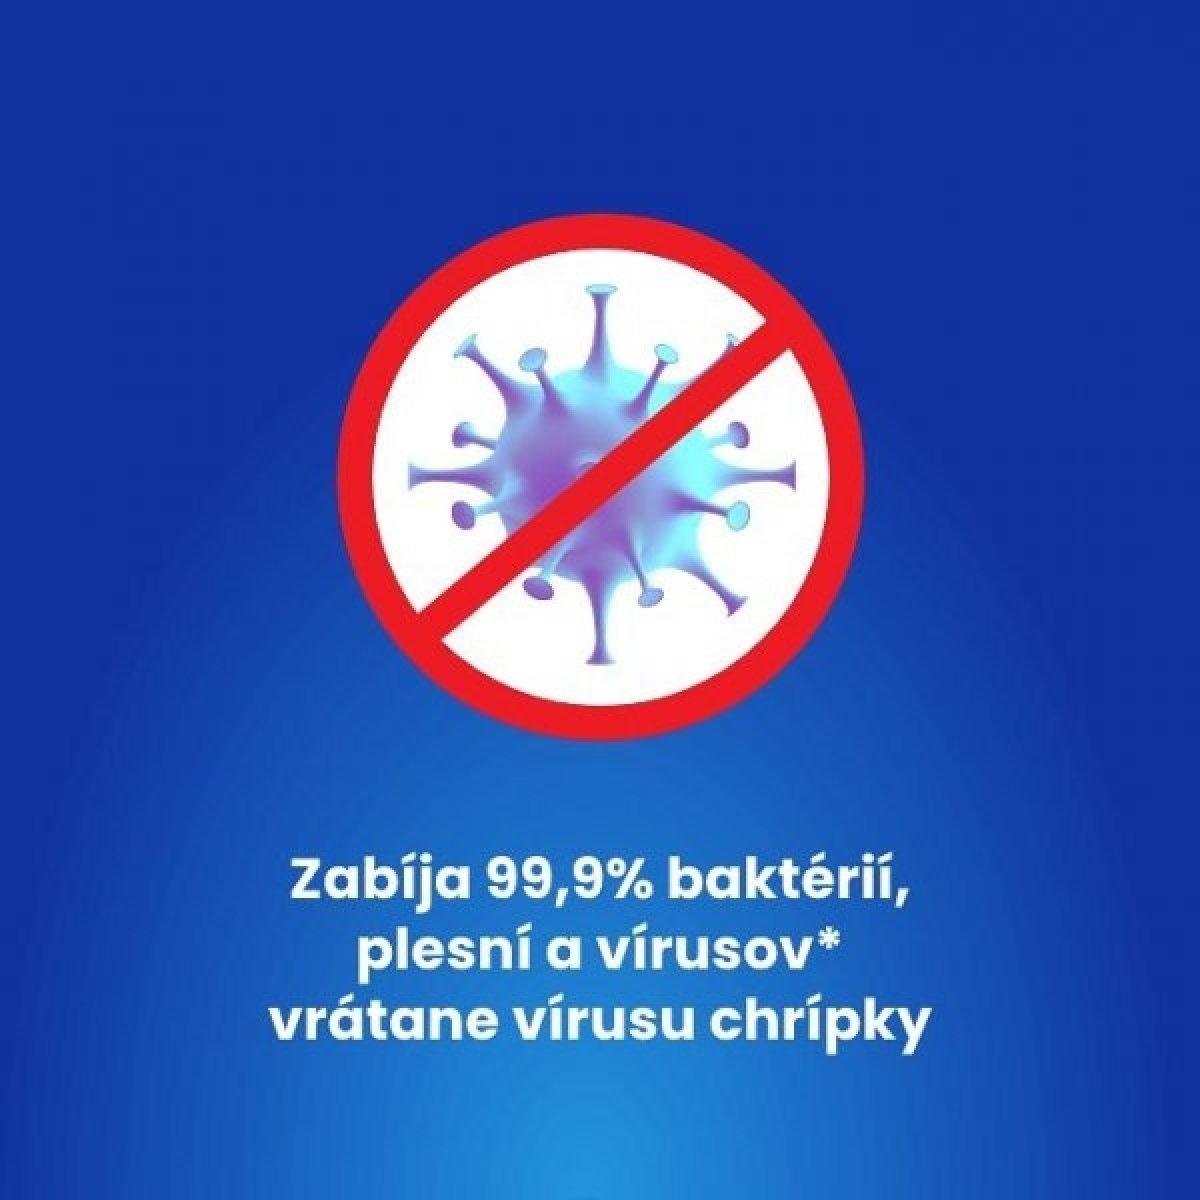 Ničí vírusy* a baktérie